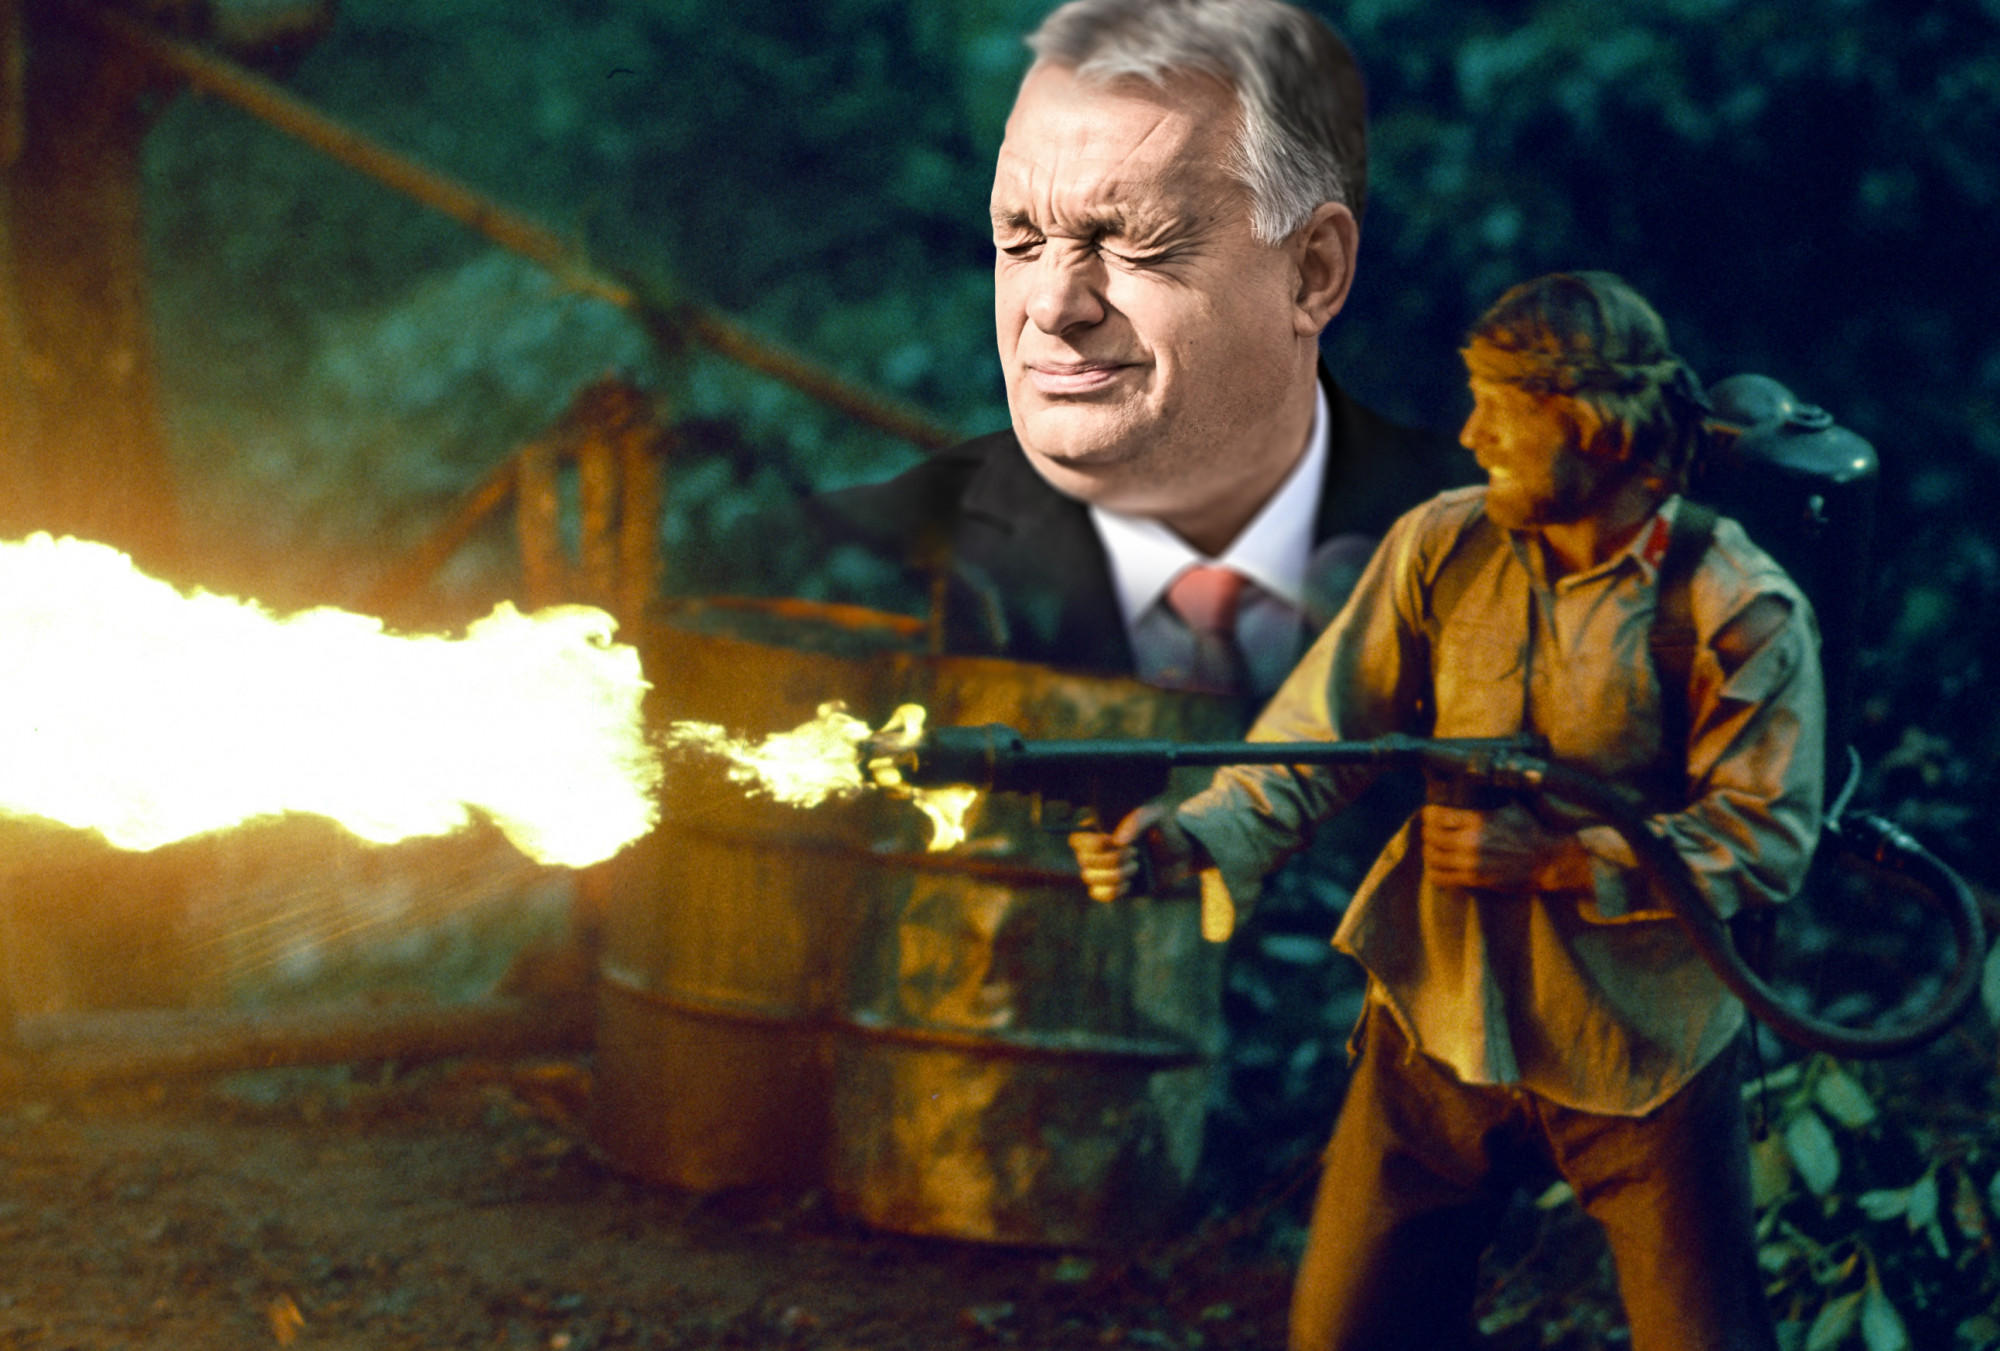 Hová tűnt Orbán, a streetfighter?